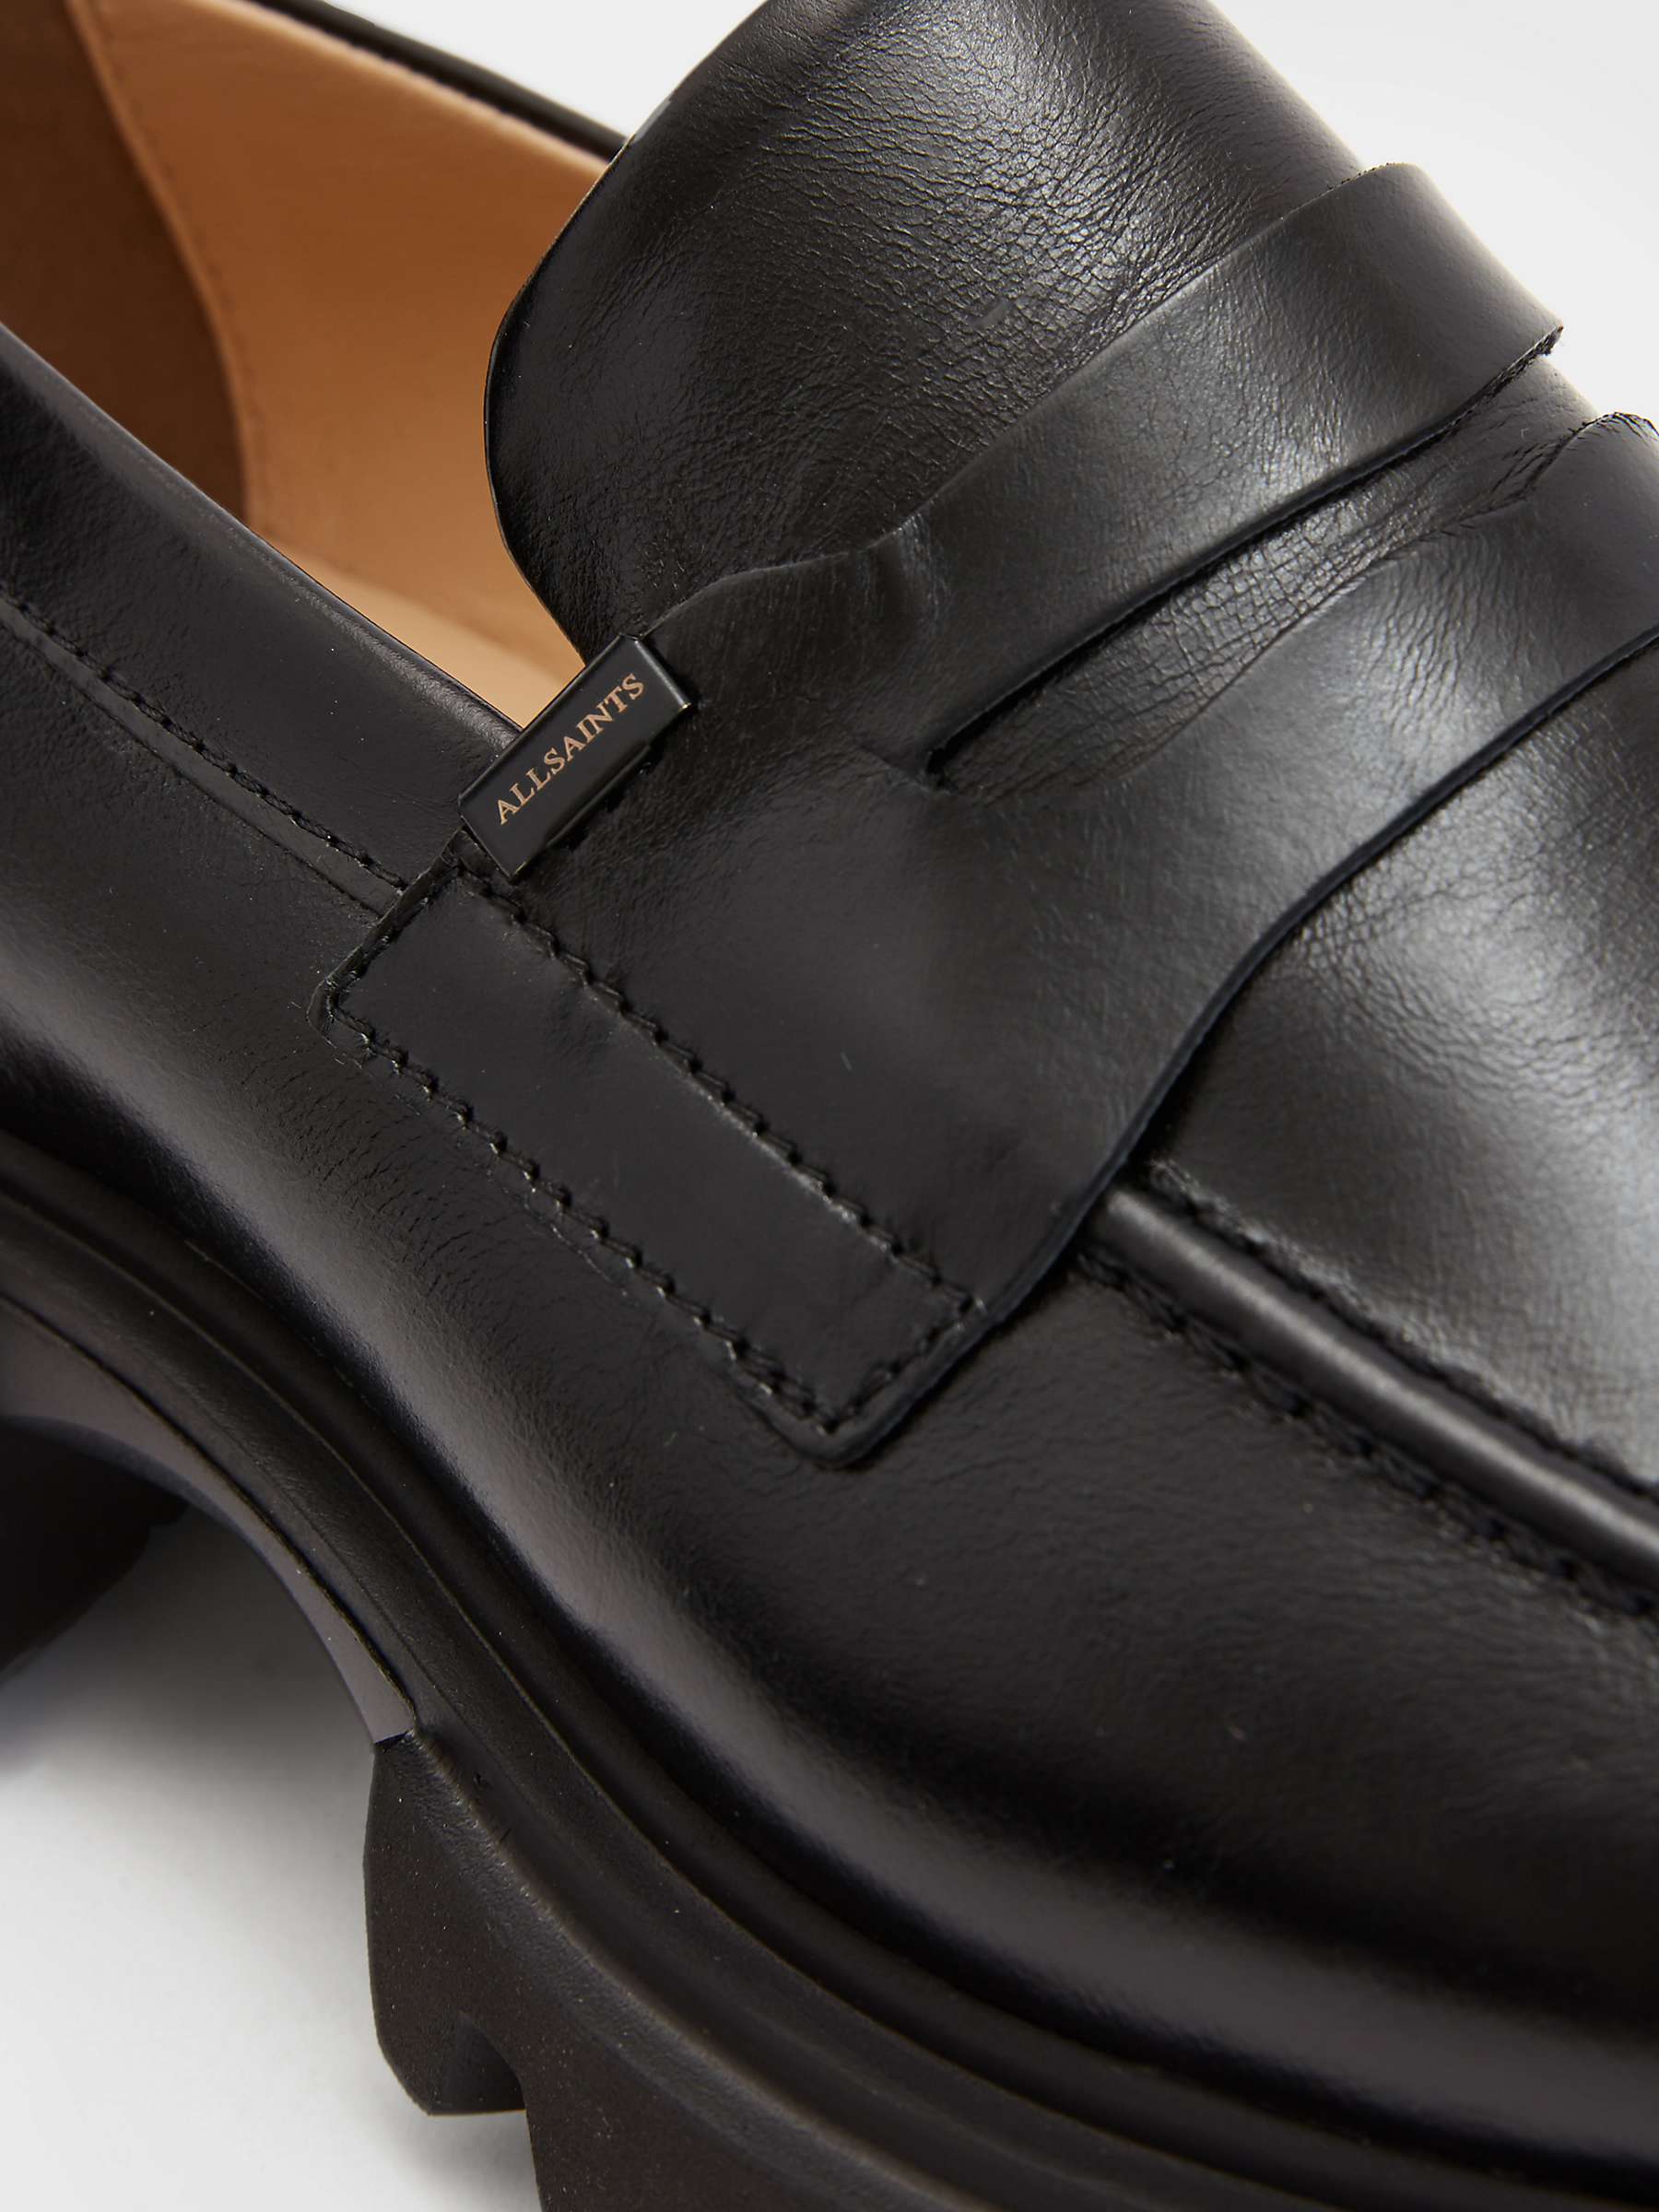 Buy AllSaints Lola Leather Slip On Loafers, Black Online at johnlewis.com